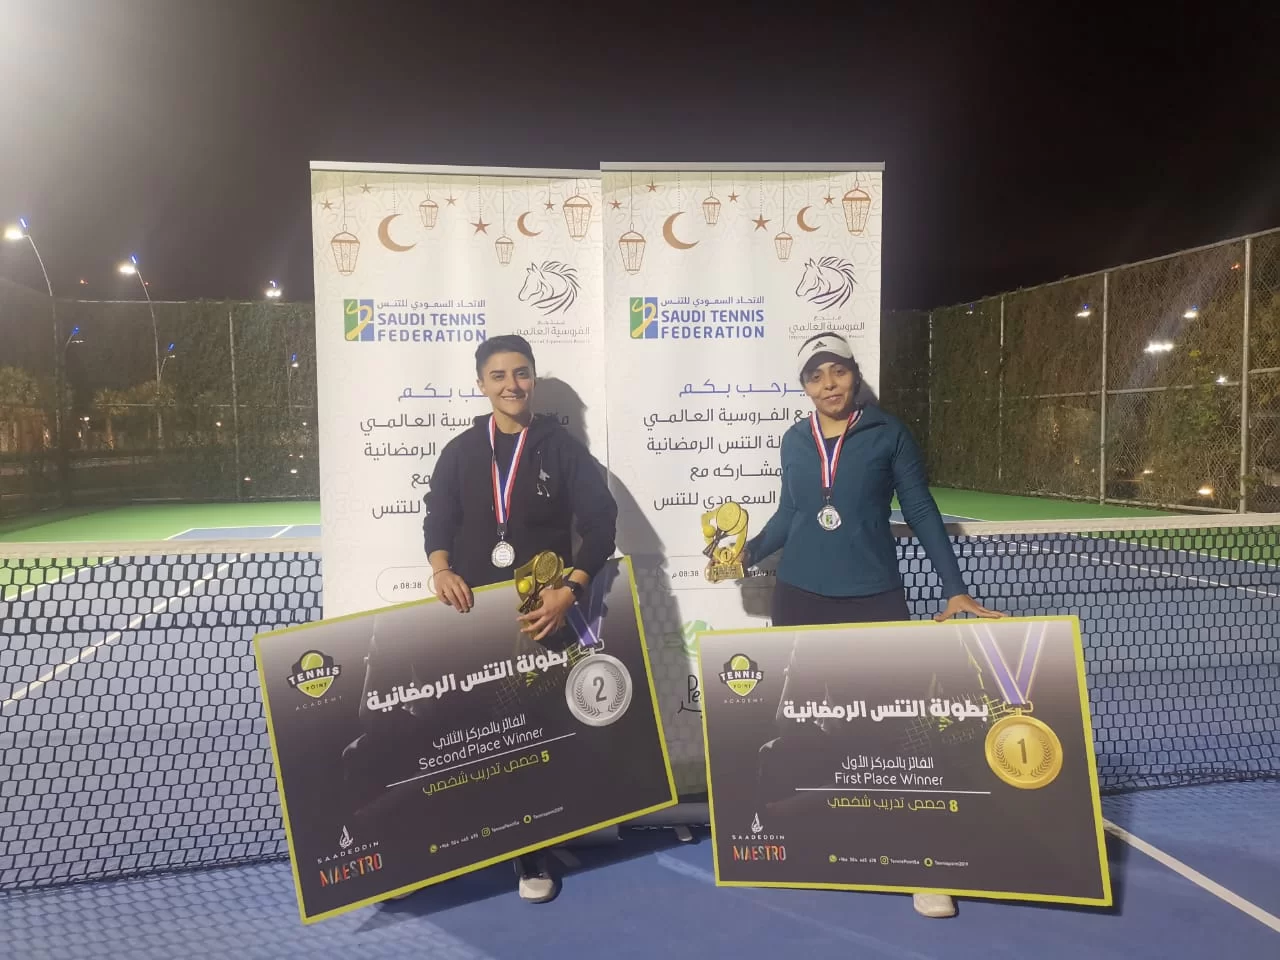 فازت لاعبة التنس السعودية رغدة بنت عبد الله بن وثلان، ببطولة كرة المضرب الرمضانية التنشيطية التي أسدل الستار على فعالياتها بملاعب التنس في منتجع الفروسية العالمي بالعاصمة السعودية الرياض.